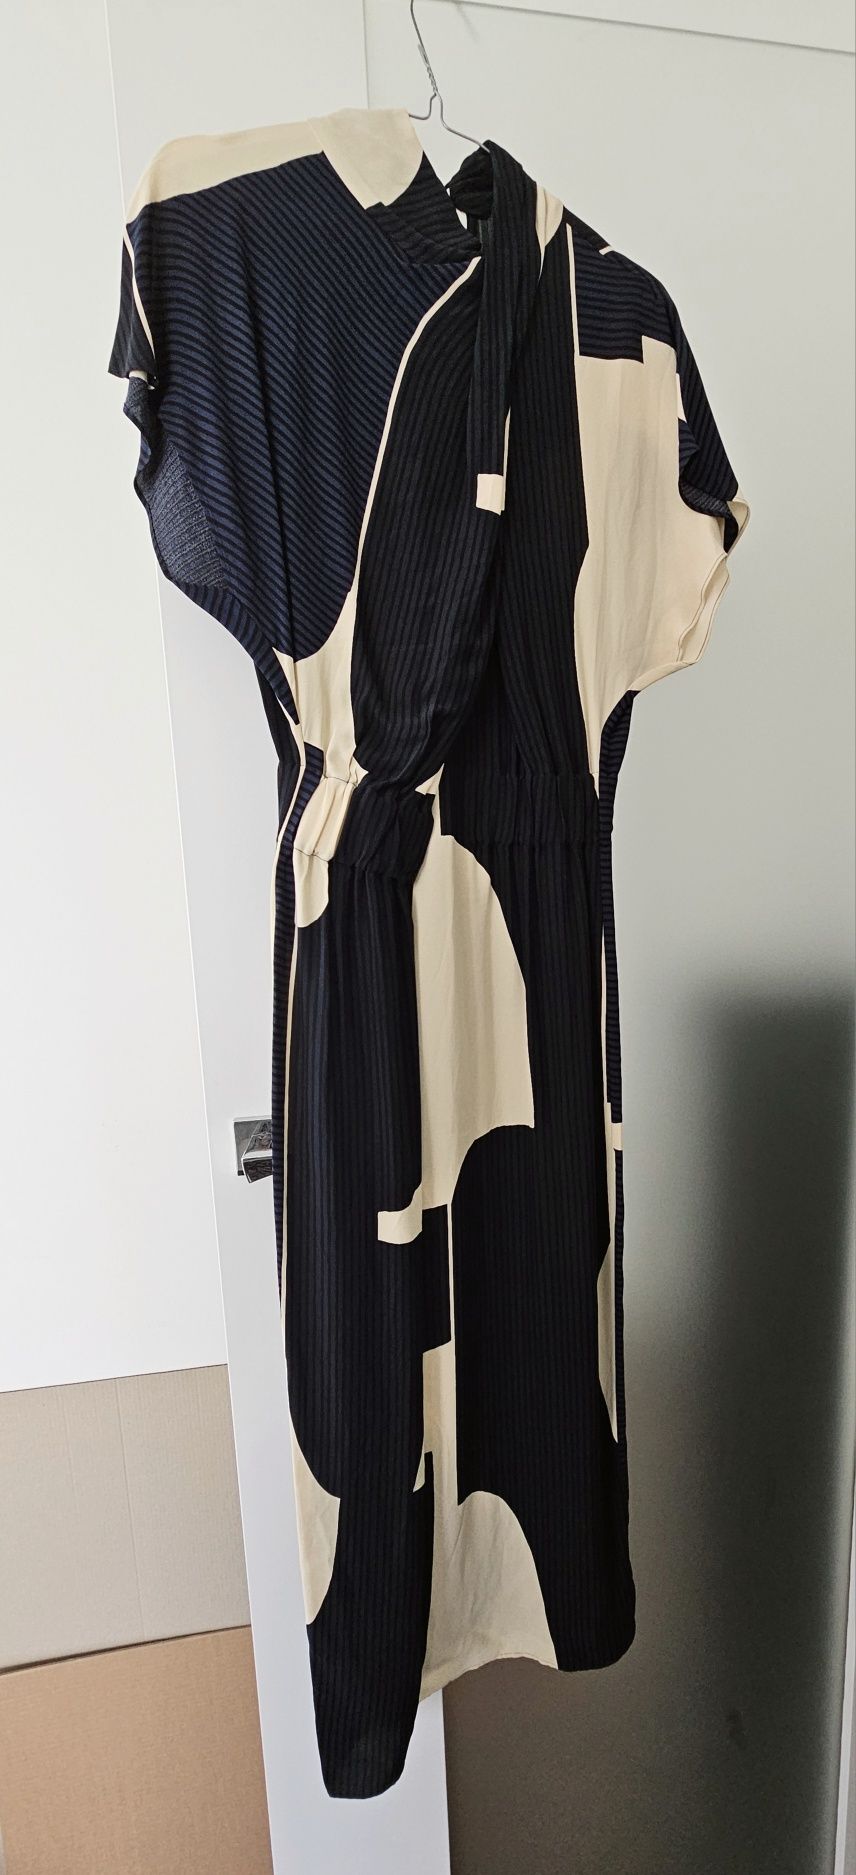 Granatowo-kremowa modernistyczna sukienka Massimo Dutti
Rozmiar 36
Now